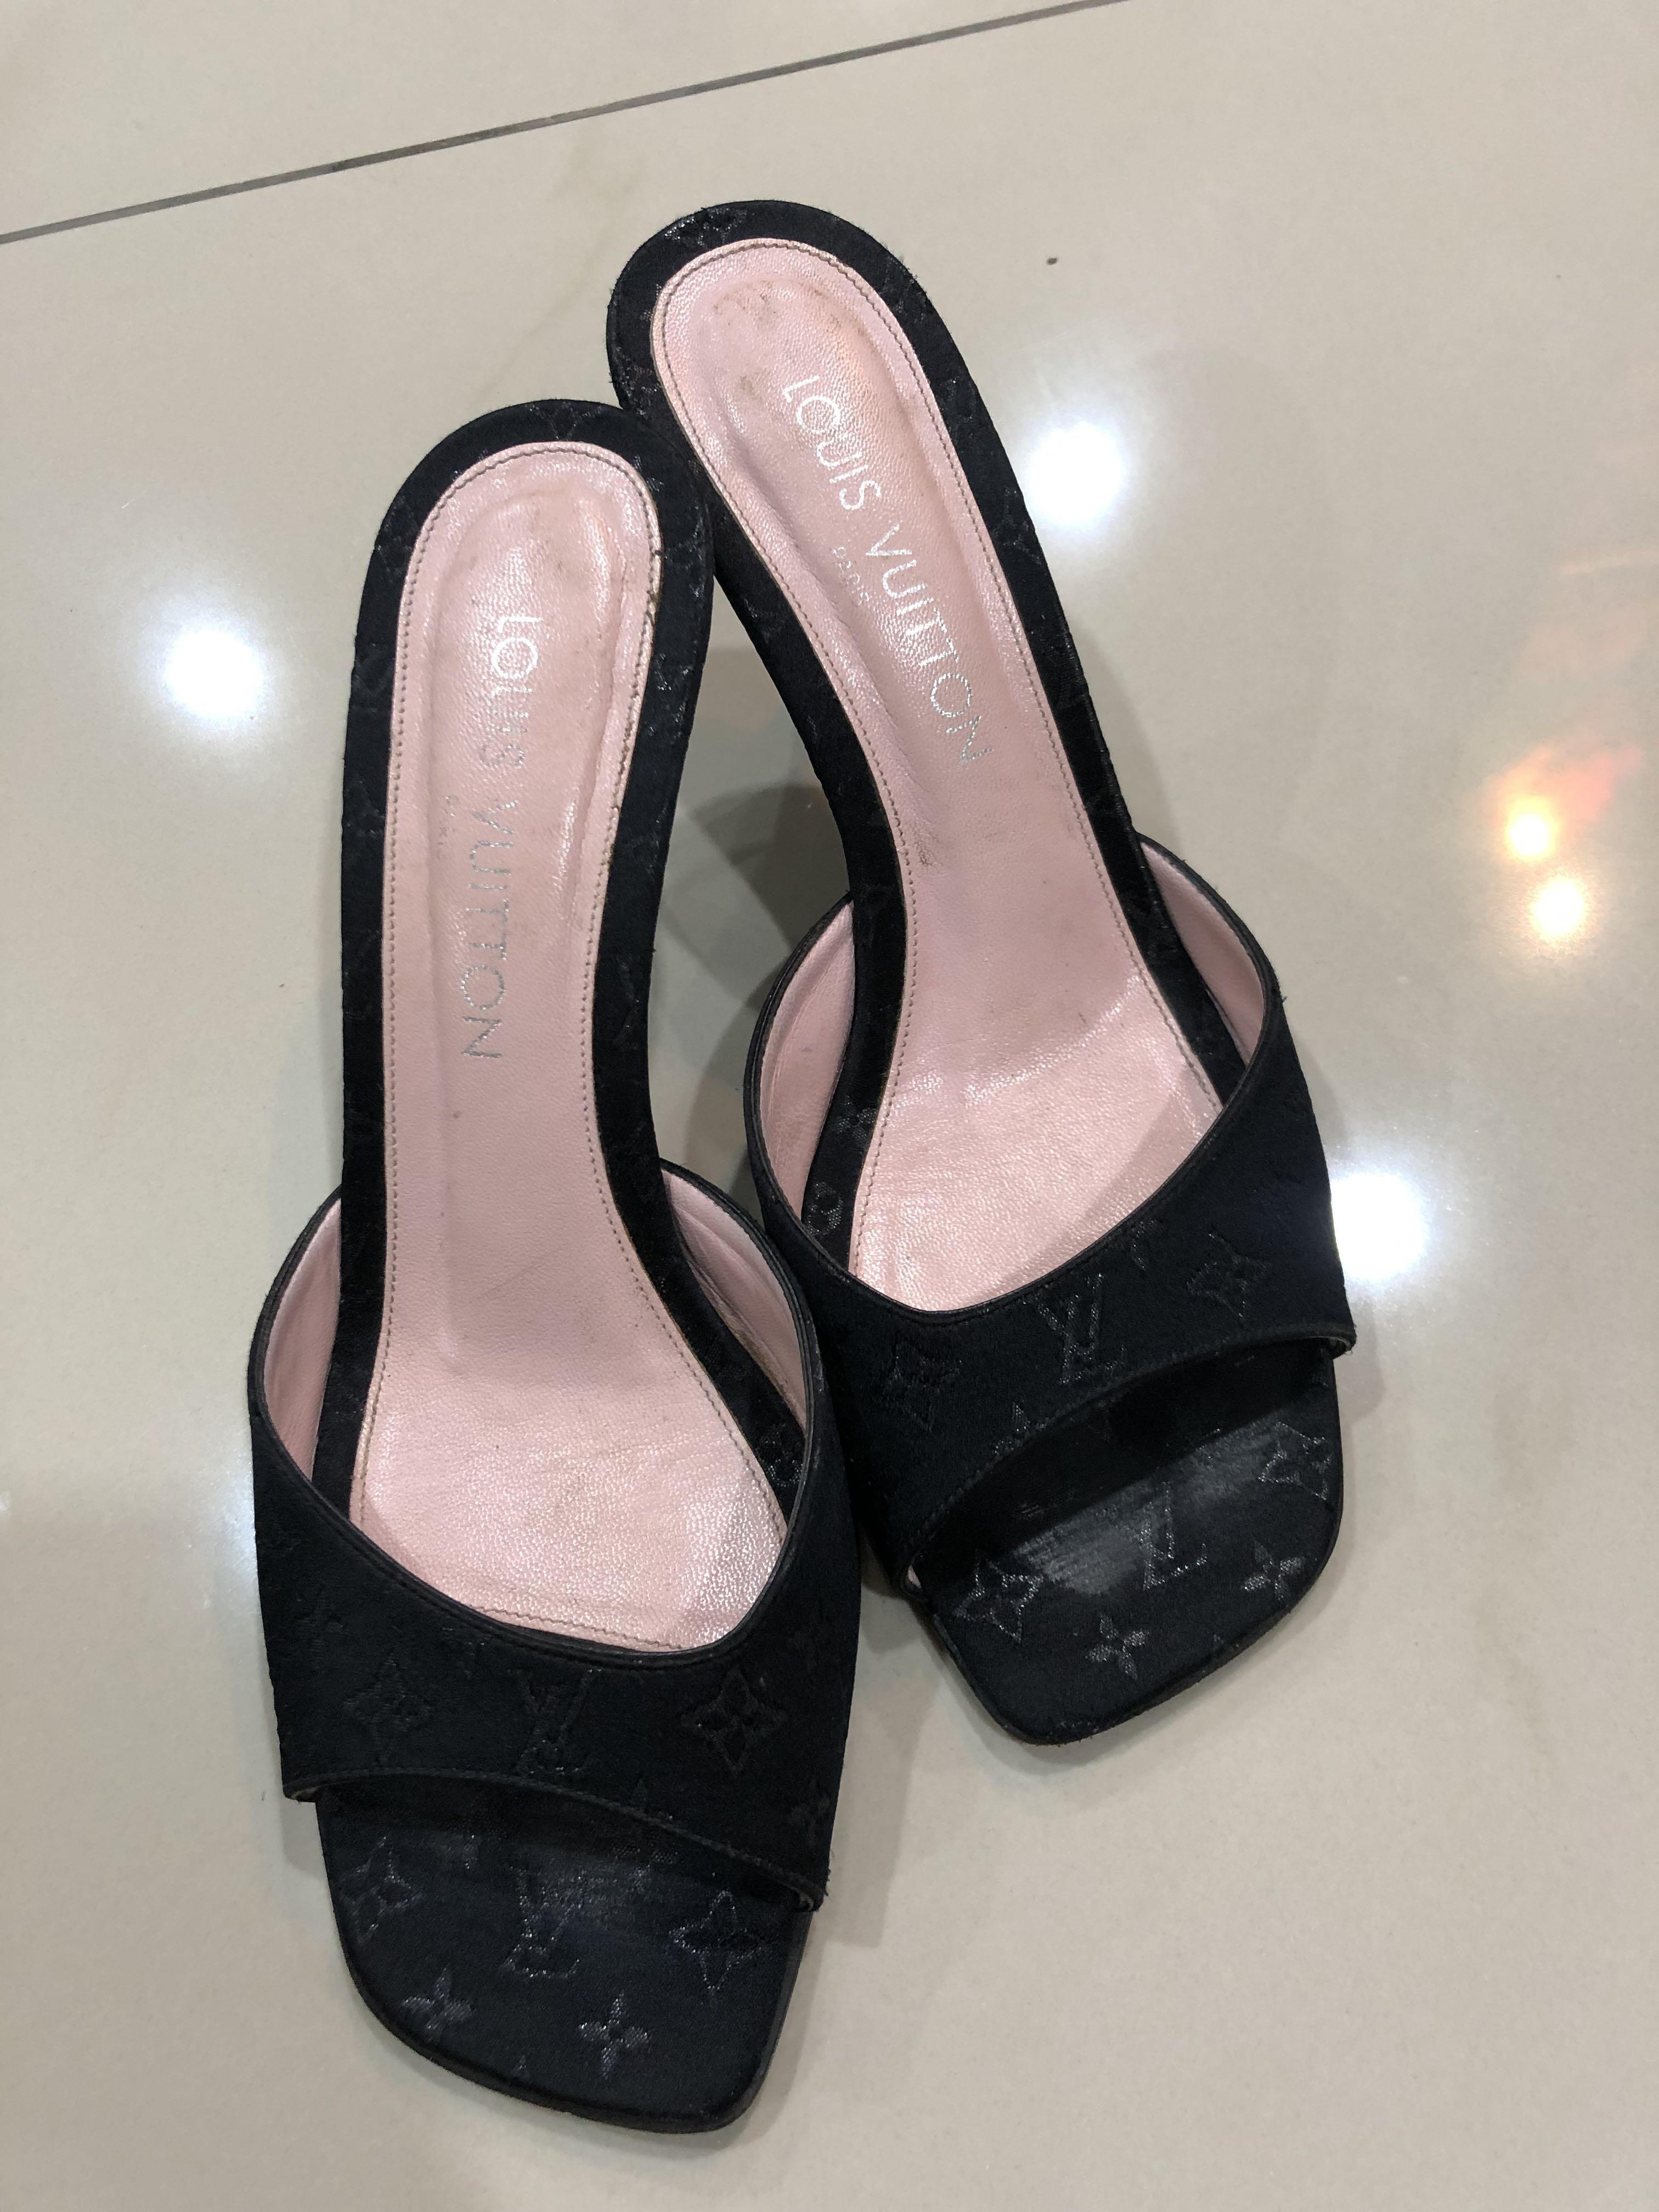 lv heels black